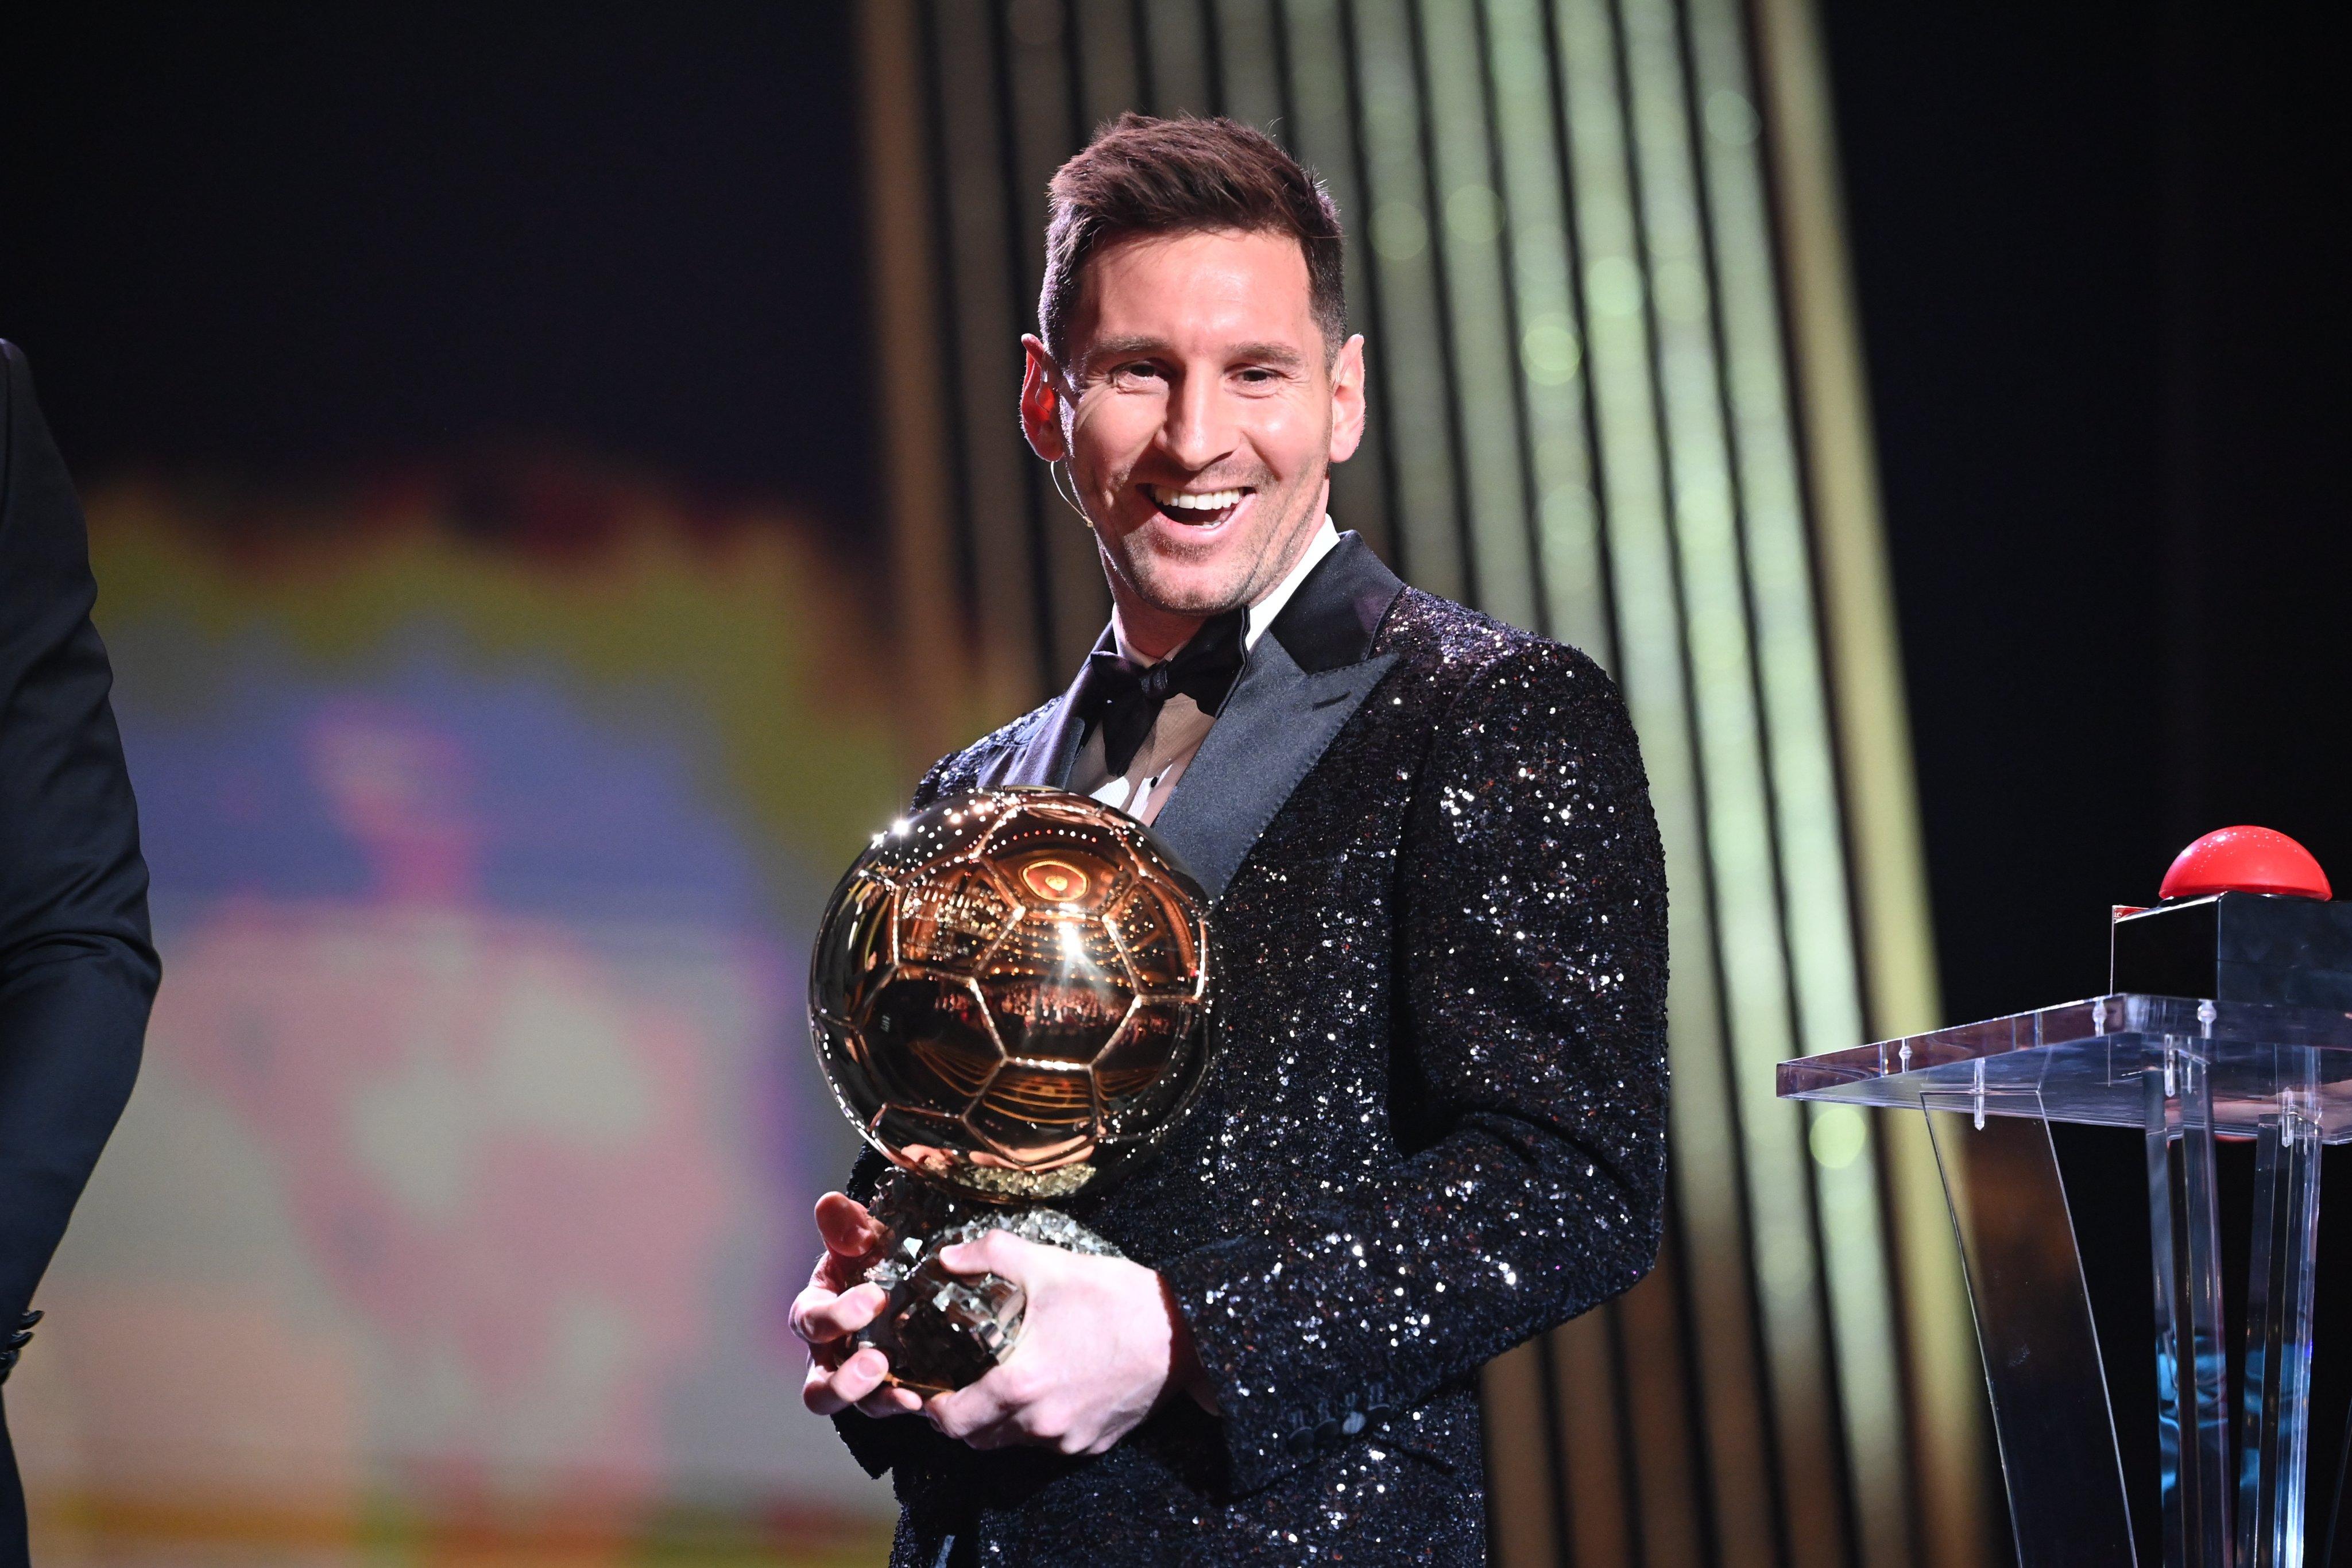 Nếu bạn là fan hâm mộ của Messi và đang muốn biết thêm về danh hiệu Quả bóng vàng, hãy đến xem hình ảnh chứa đựng những khoảnh khắc đầy cảm hứng và ý nghĩa.